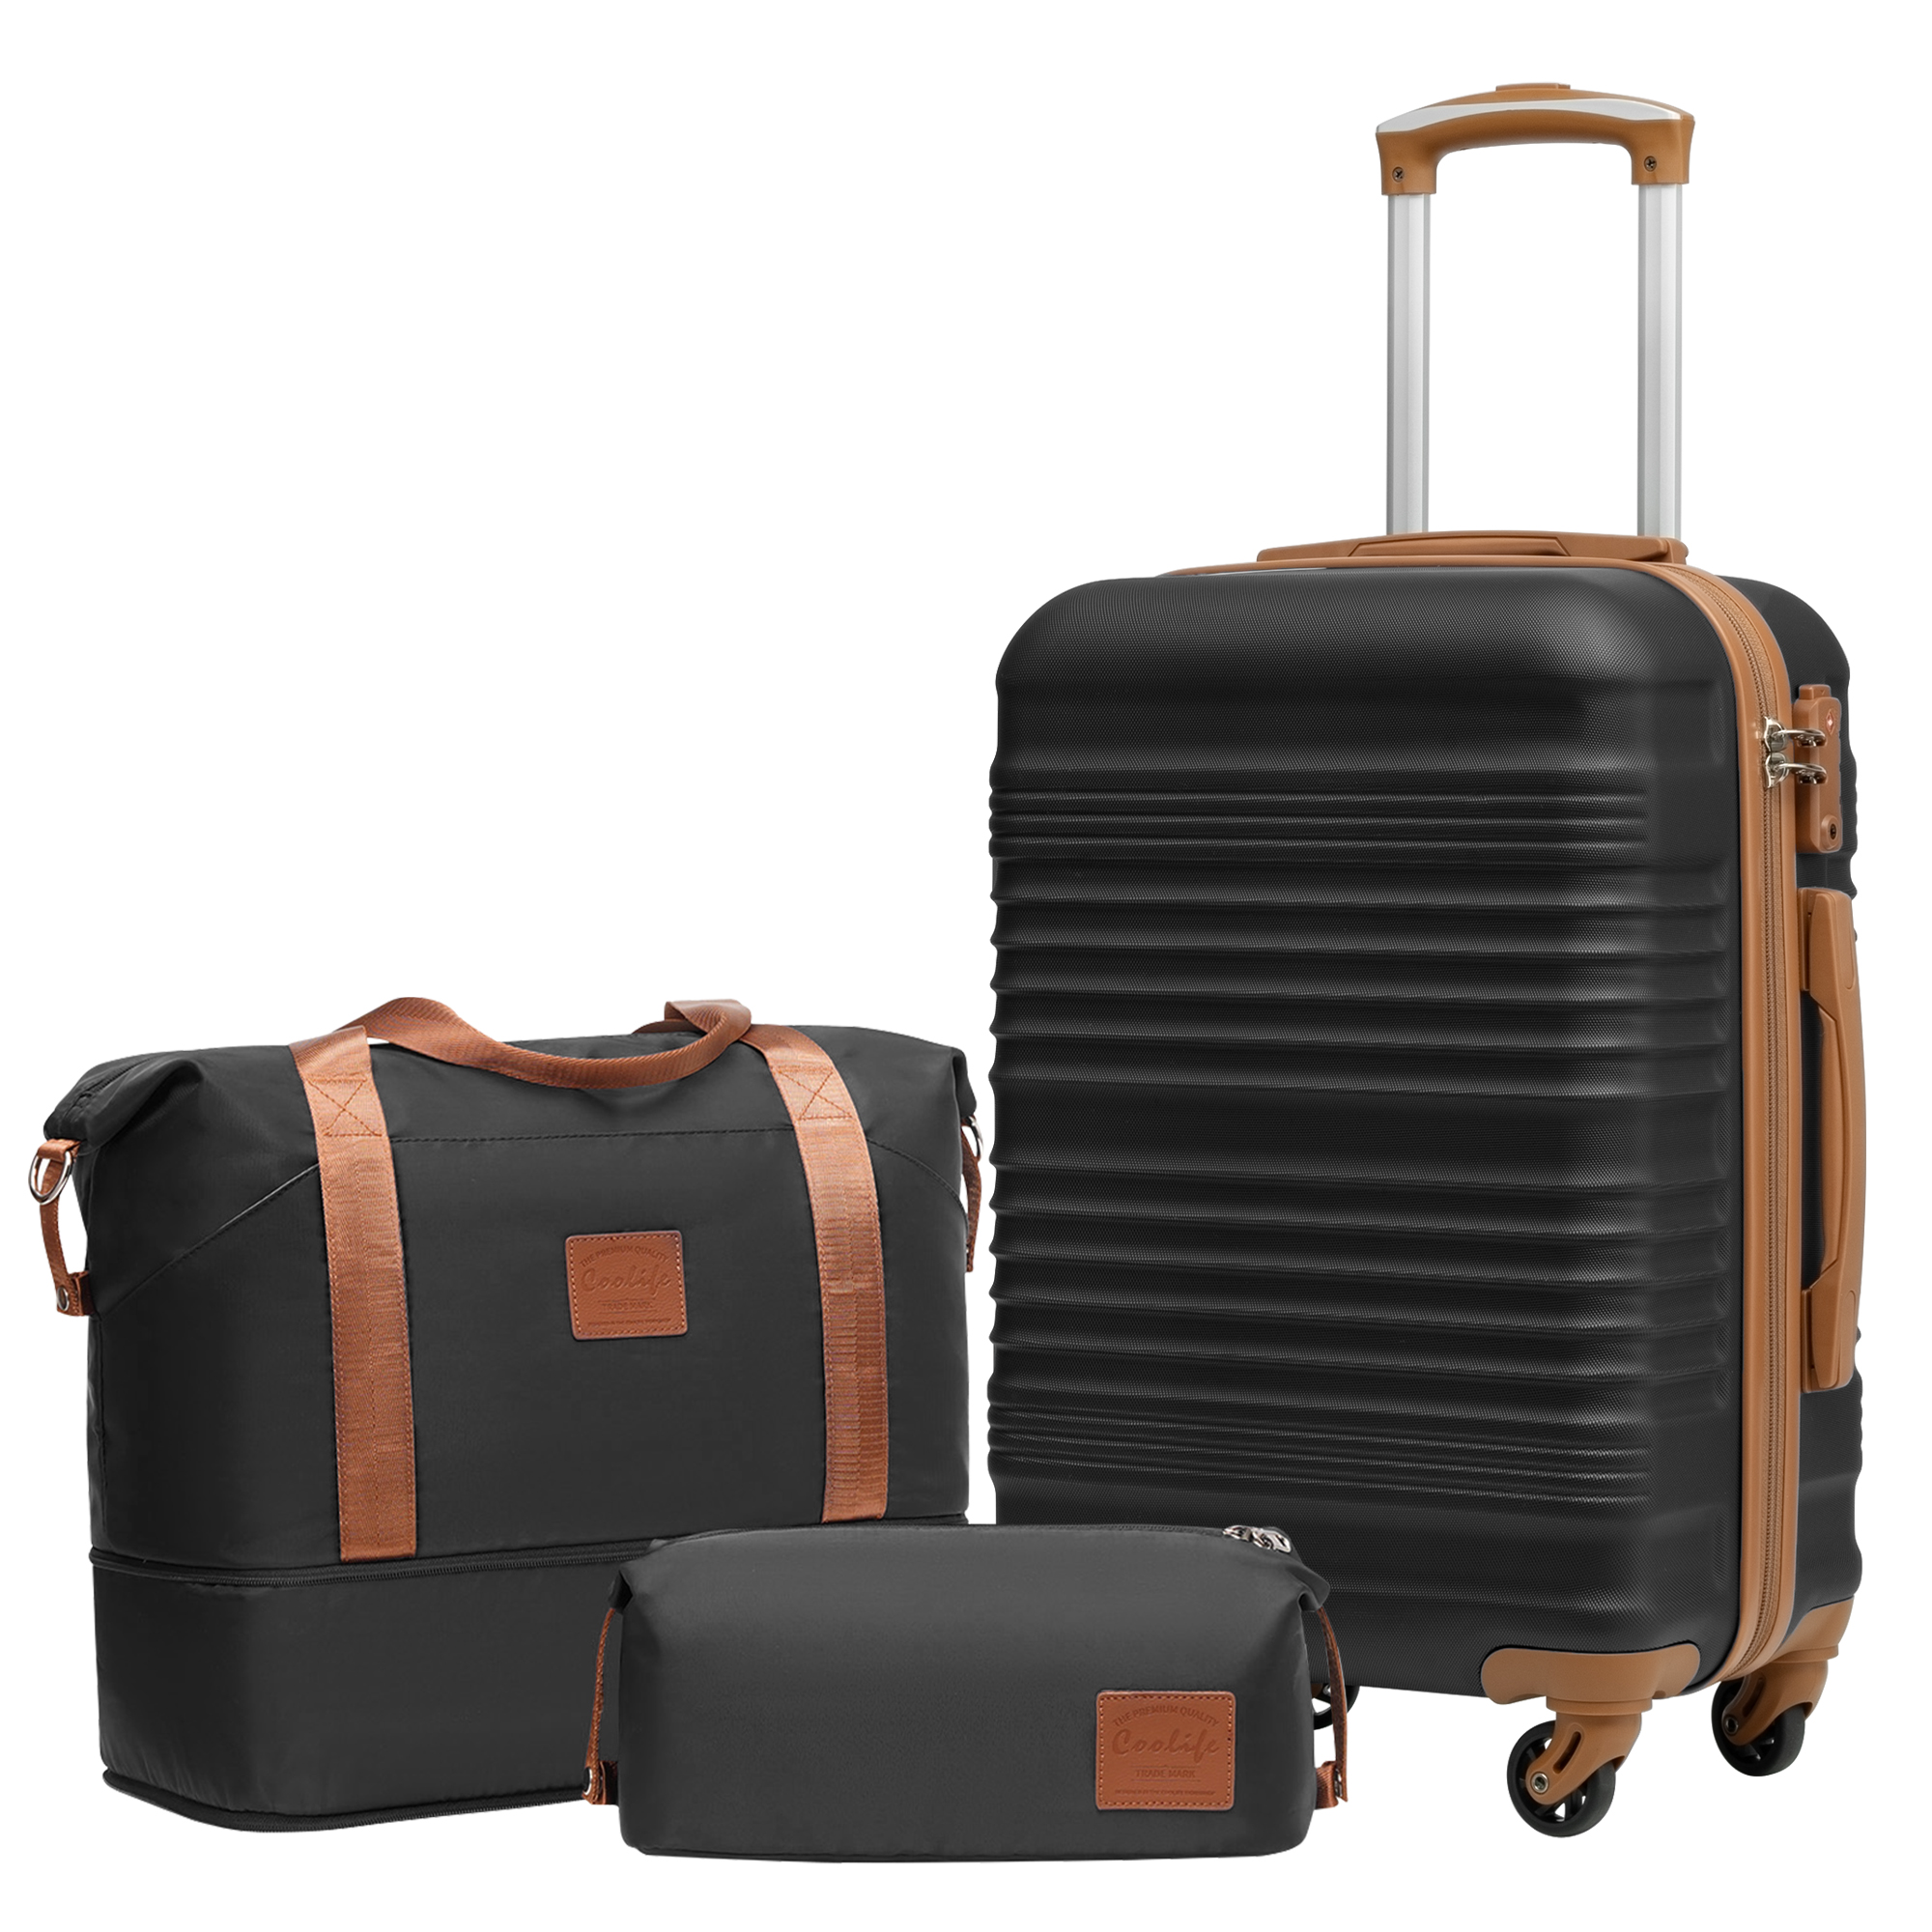 Coolife Luggage Set 3 Piece Luggage Set Carry On Suitcase Hardside Luggage with TSA Lock Spinner Wheels